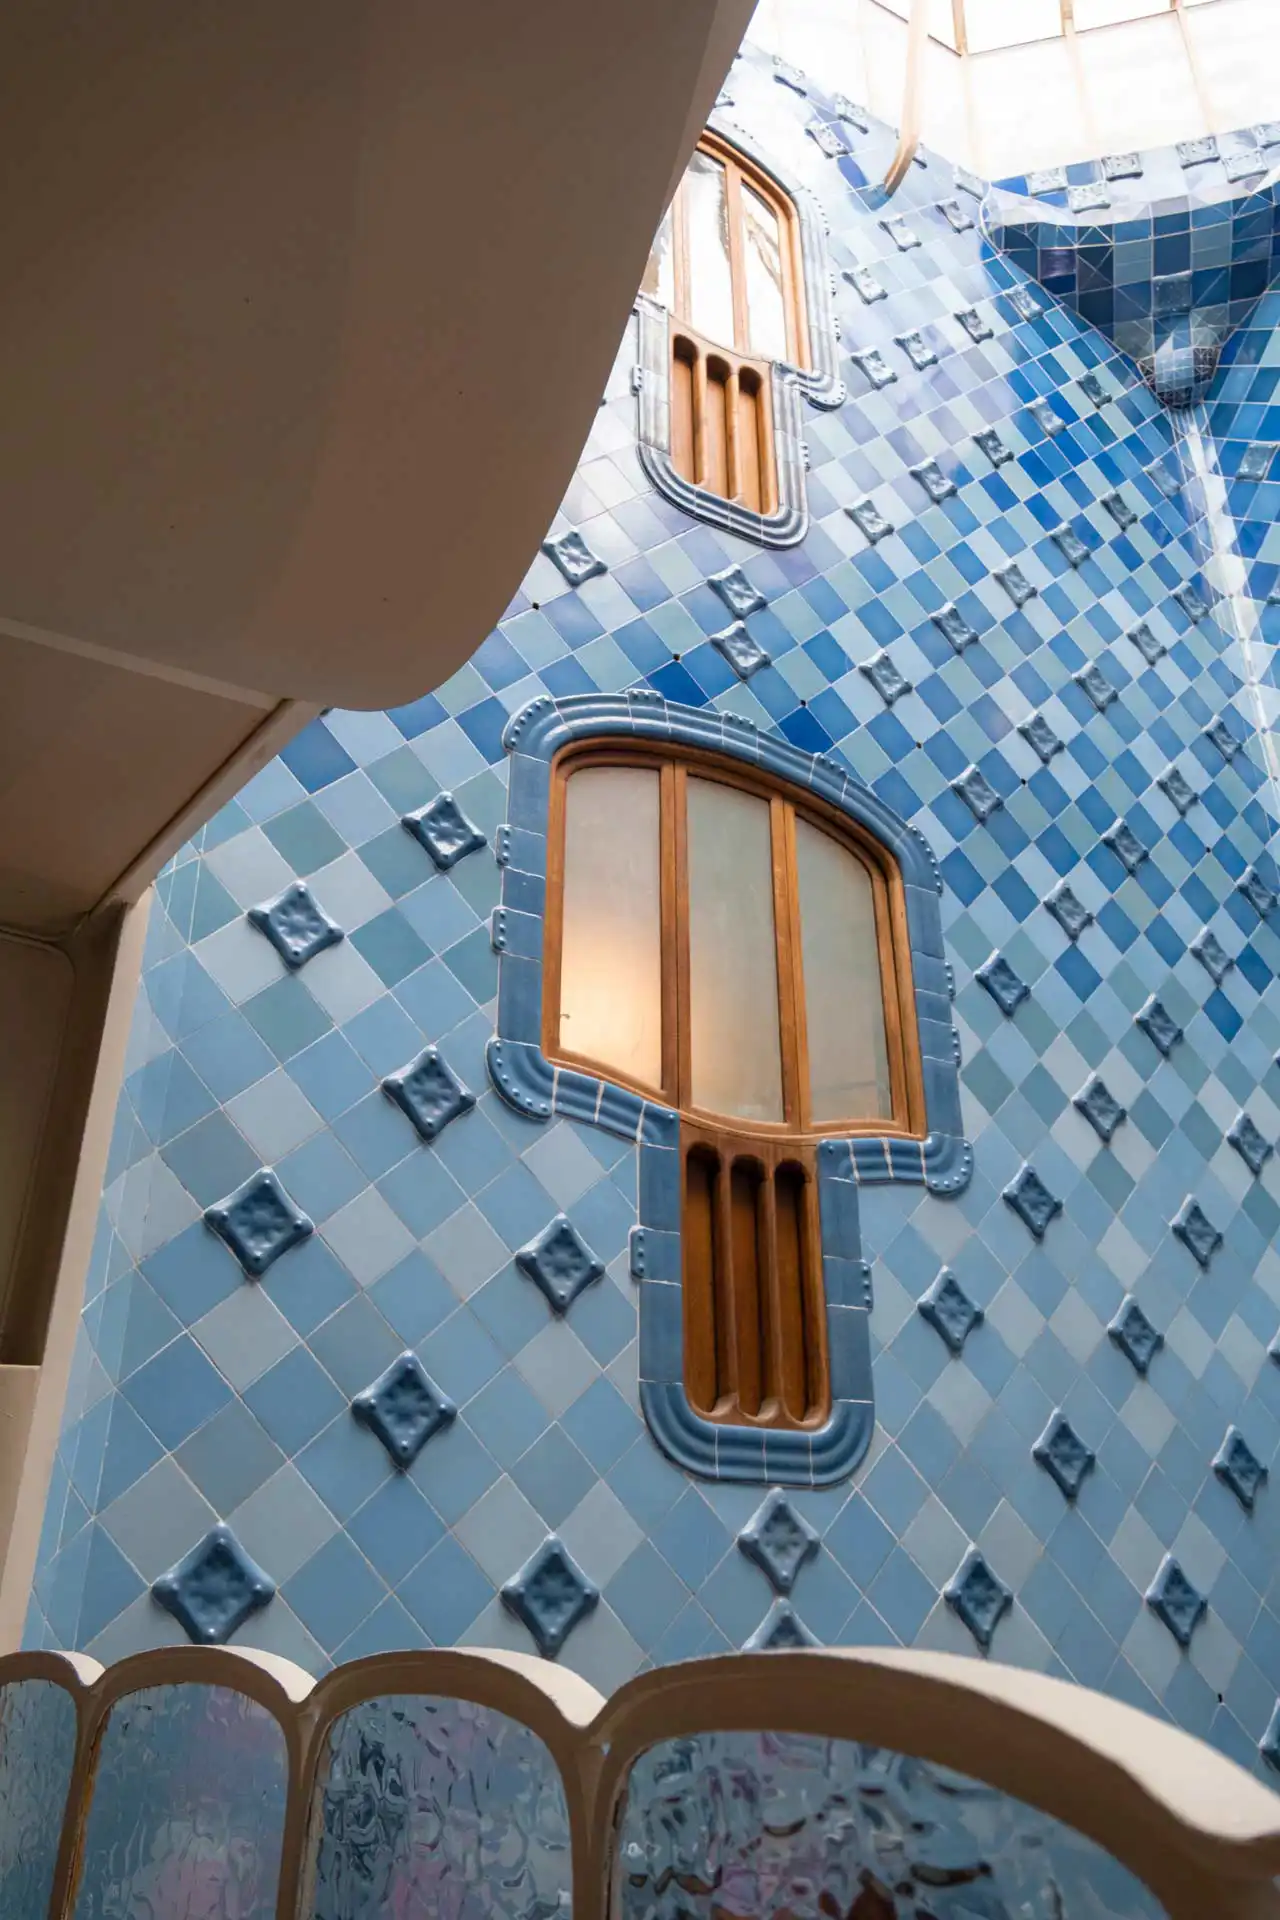 Patio intérieur de la Casa Batlló à Barcelone